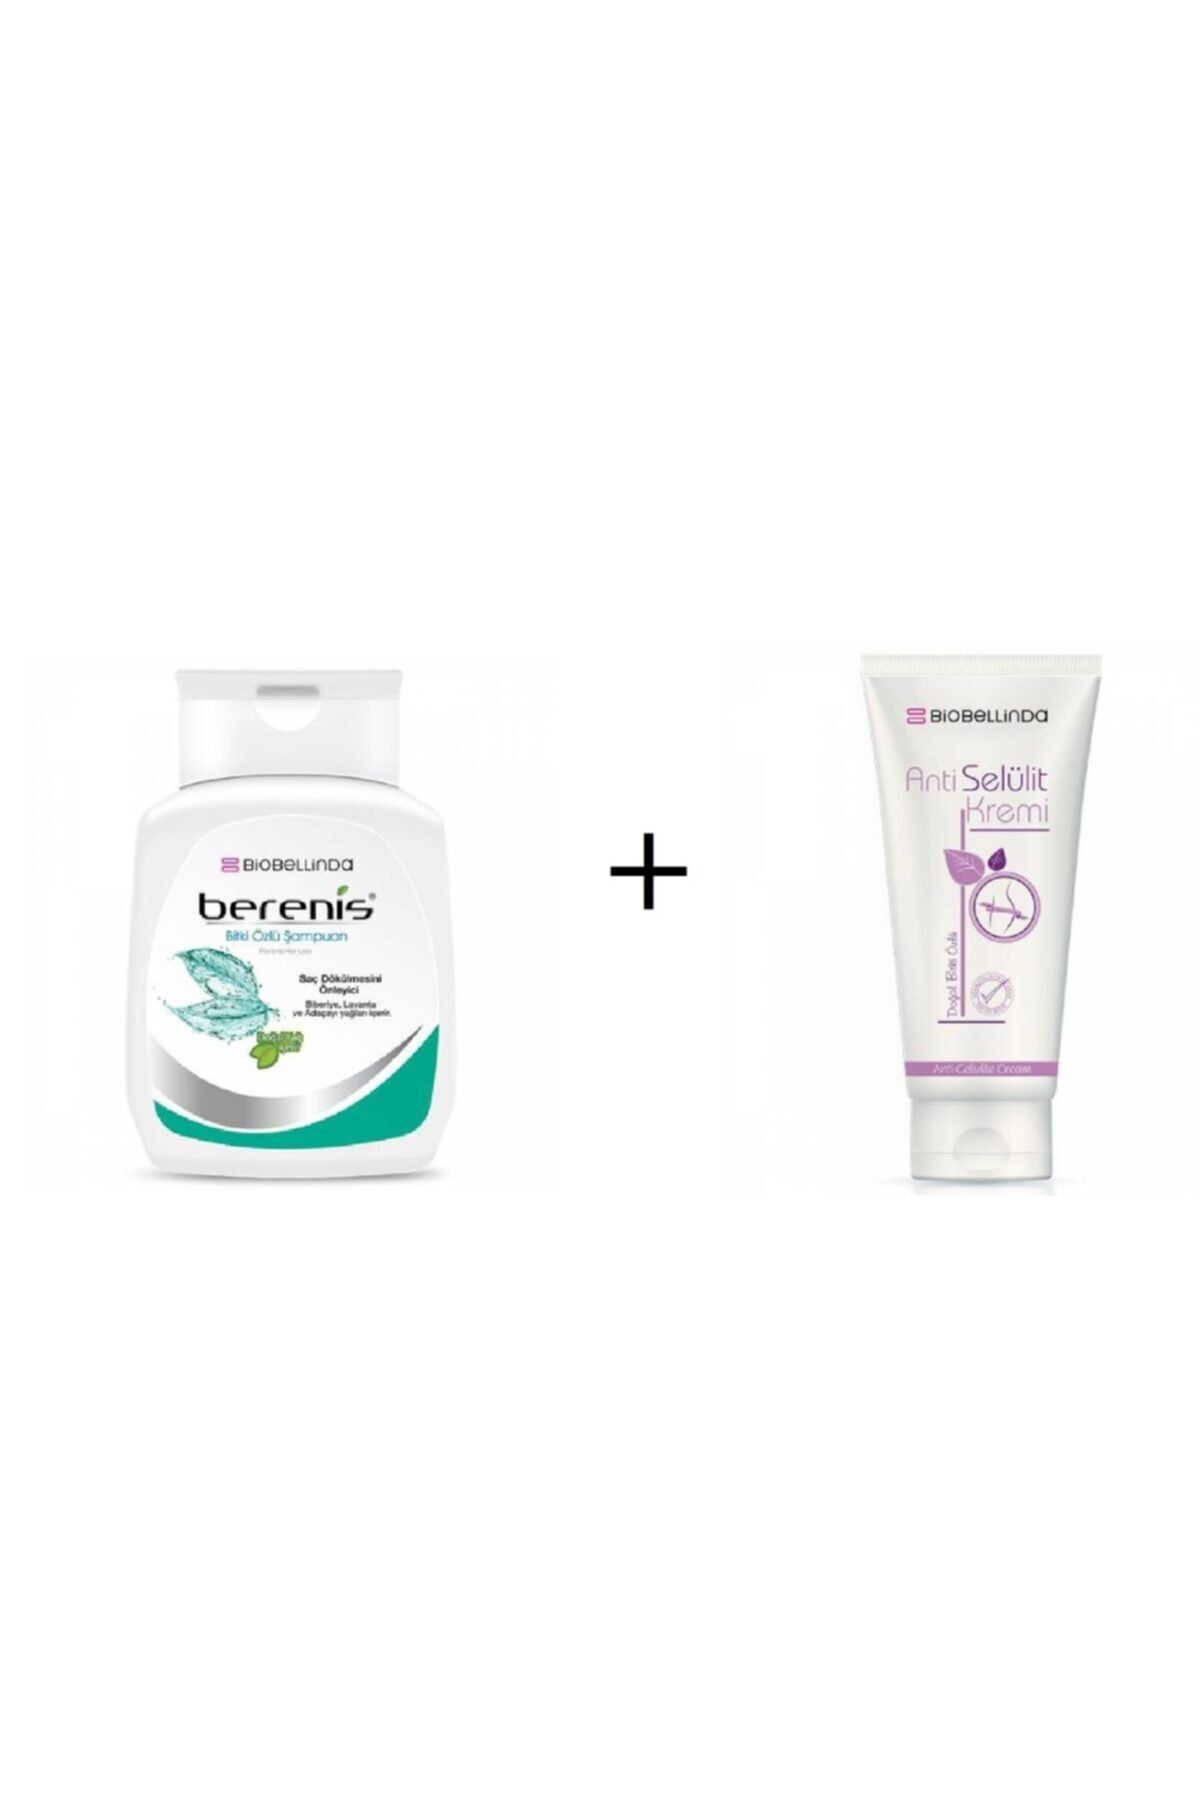 BioBellinda Berenis - Dökülen Saçlar Için Şampuan 290ml + Anti Selülit Kremi 200ml (paket)